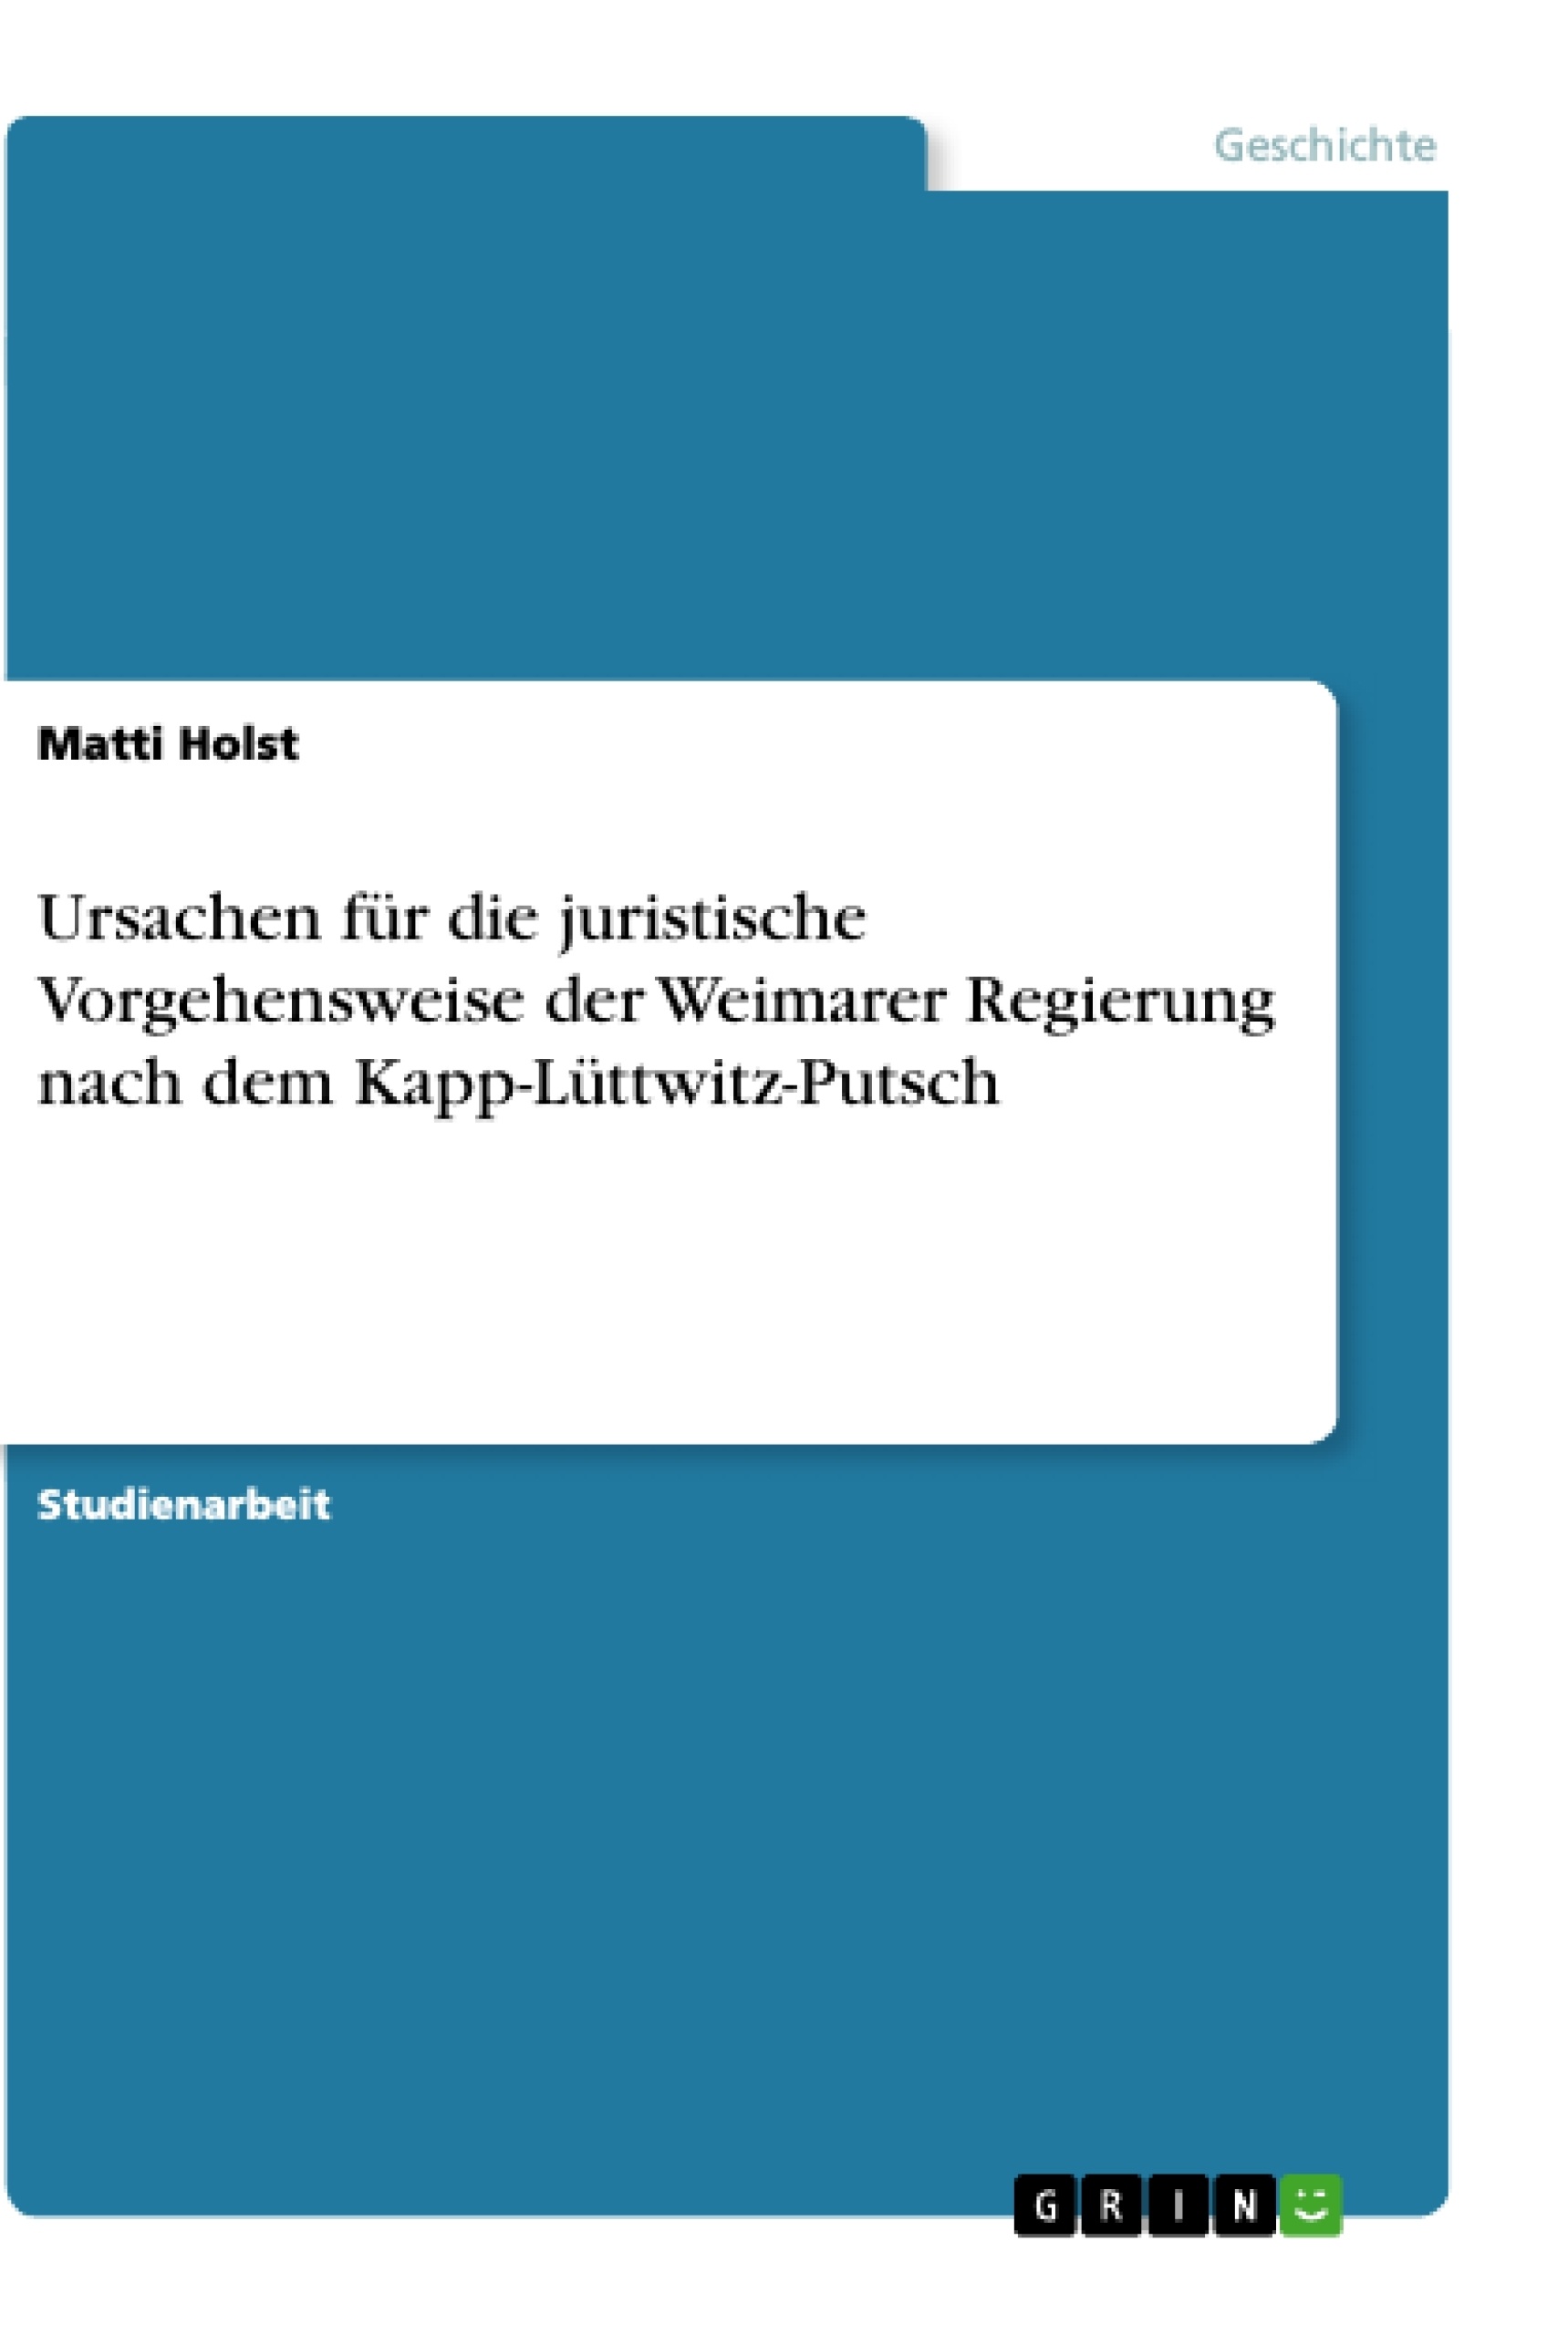 Titel: Ursachen für die juristische Vorgehensweise der Weimarer Regierung nach dem Kapp-Lüttwitz-Putsch